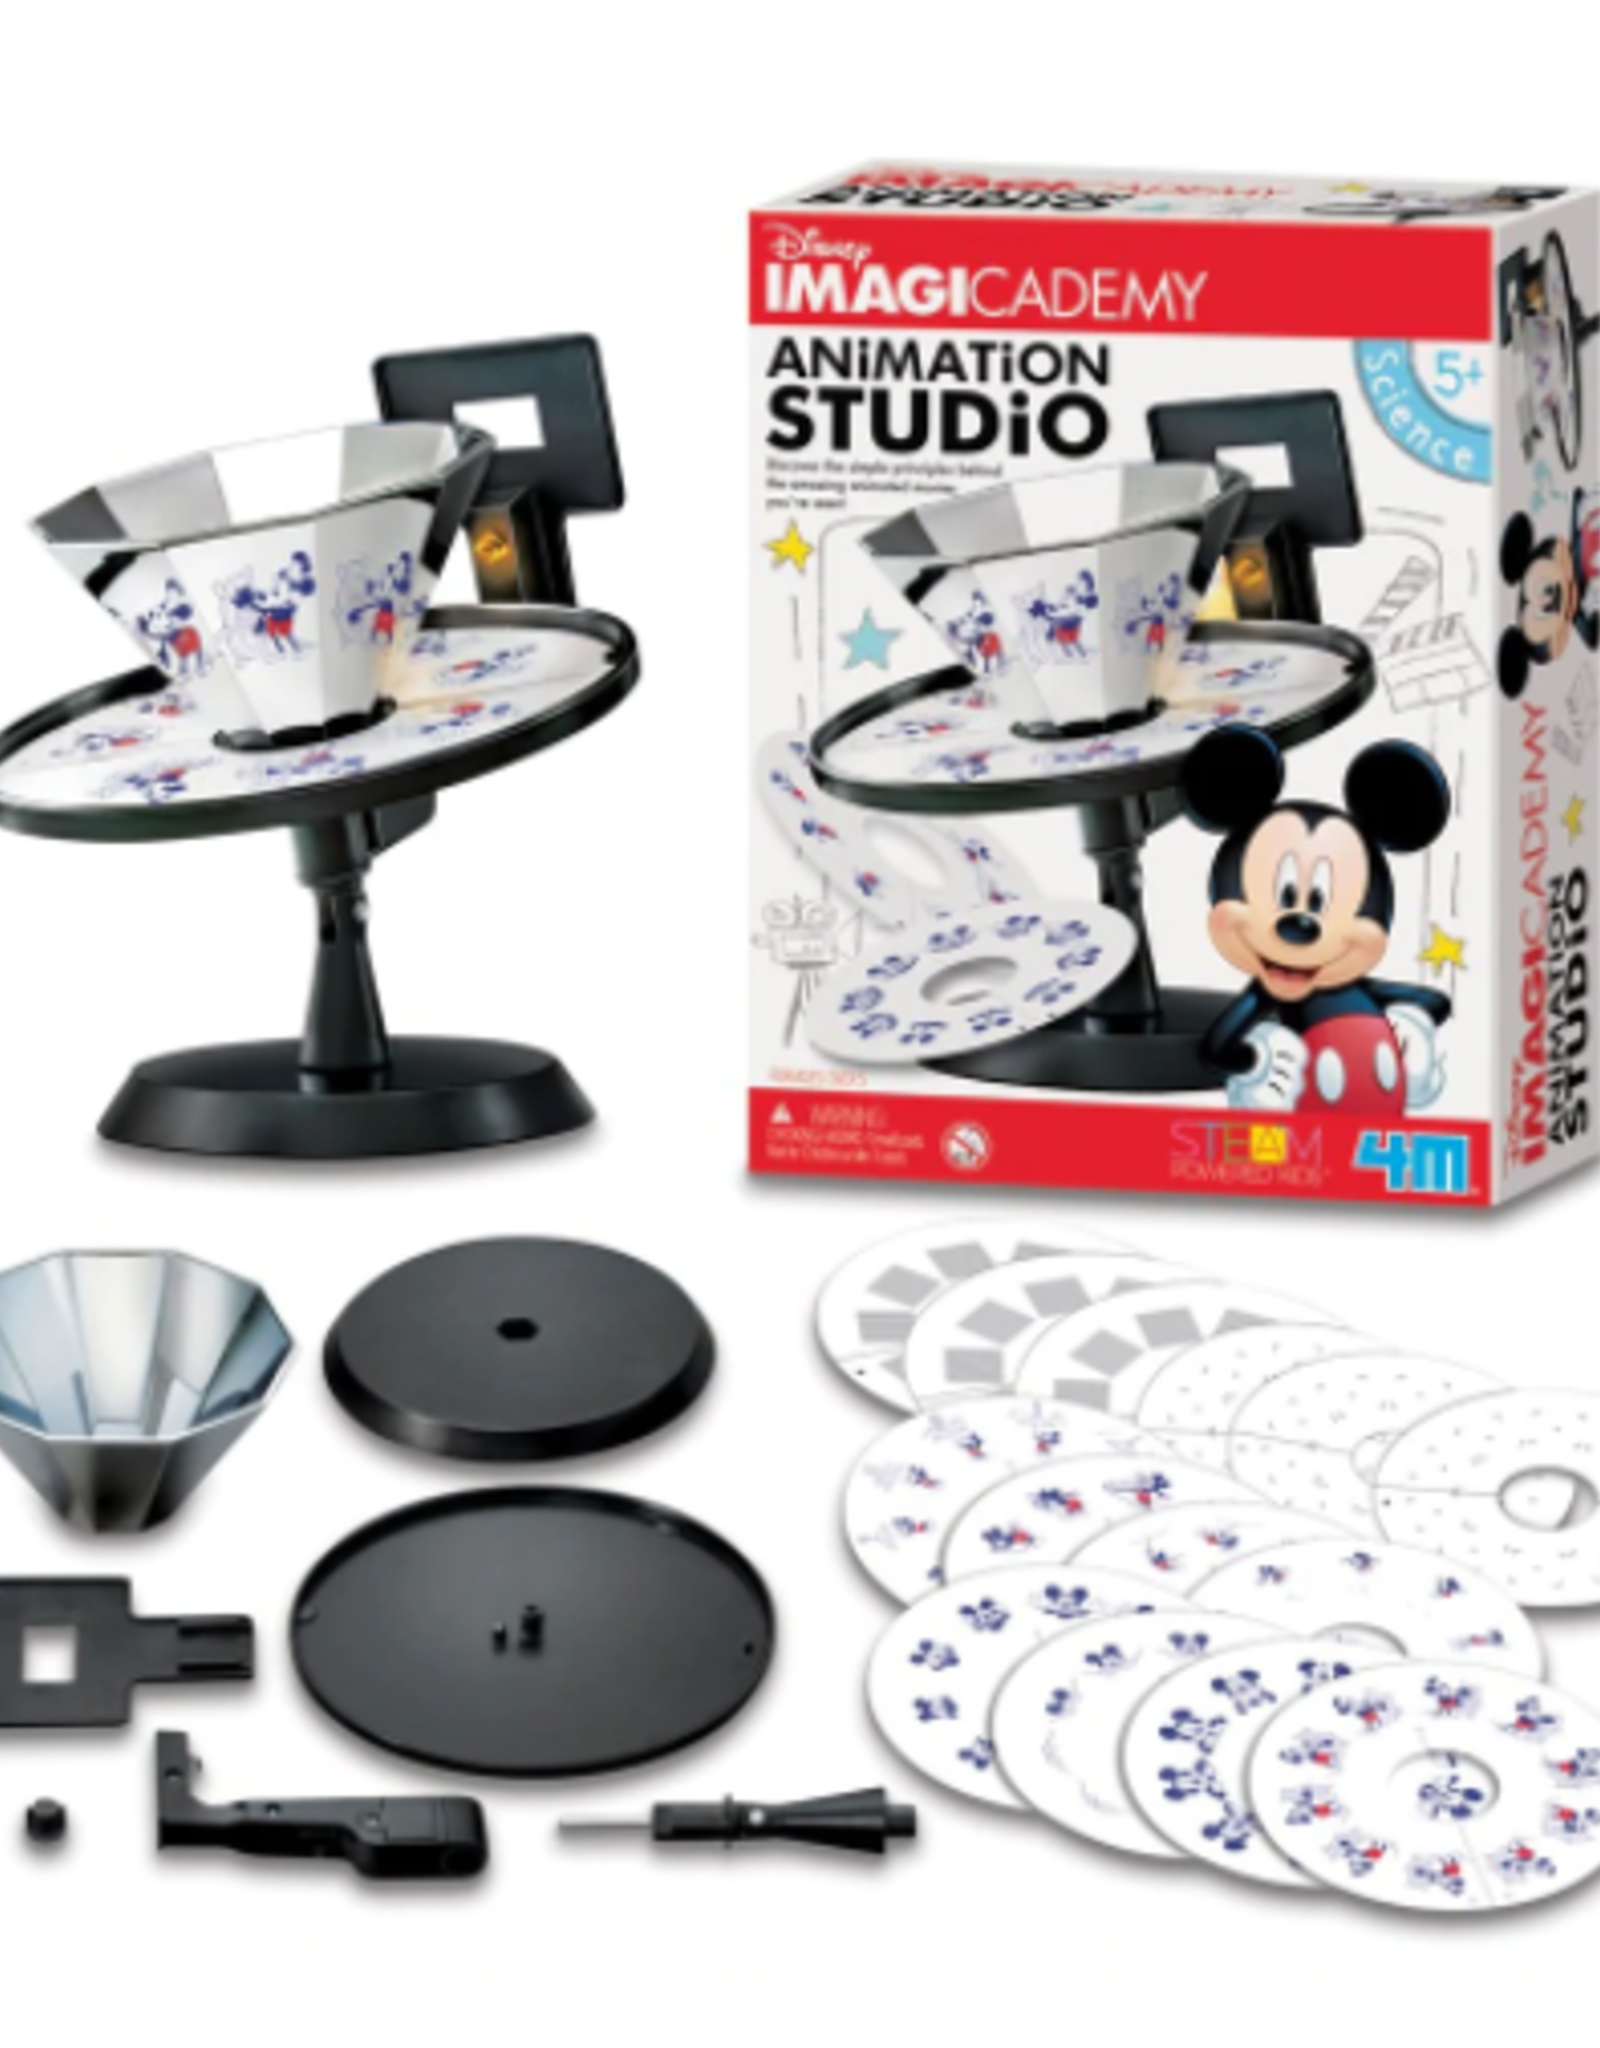 4M - Disney Imagicademy Animation Studio - Maling Road Toyshop